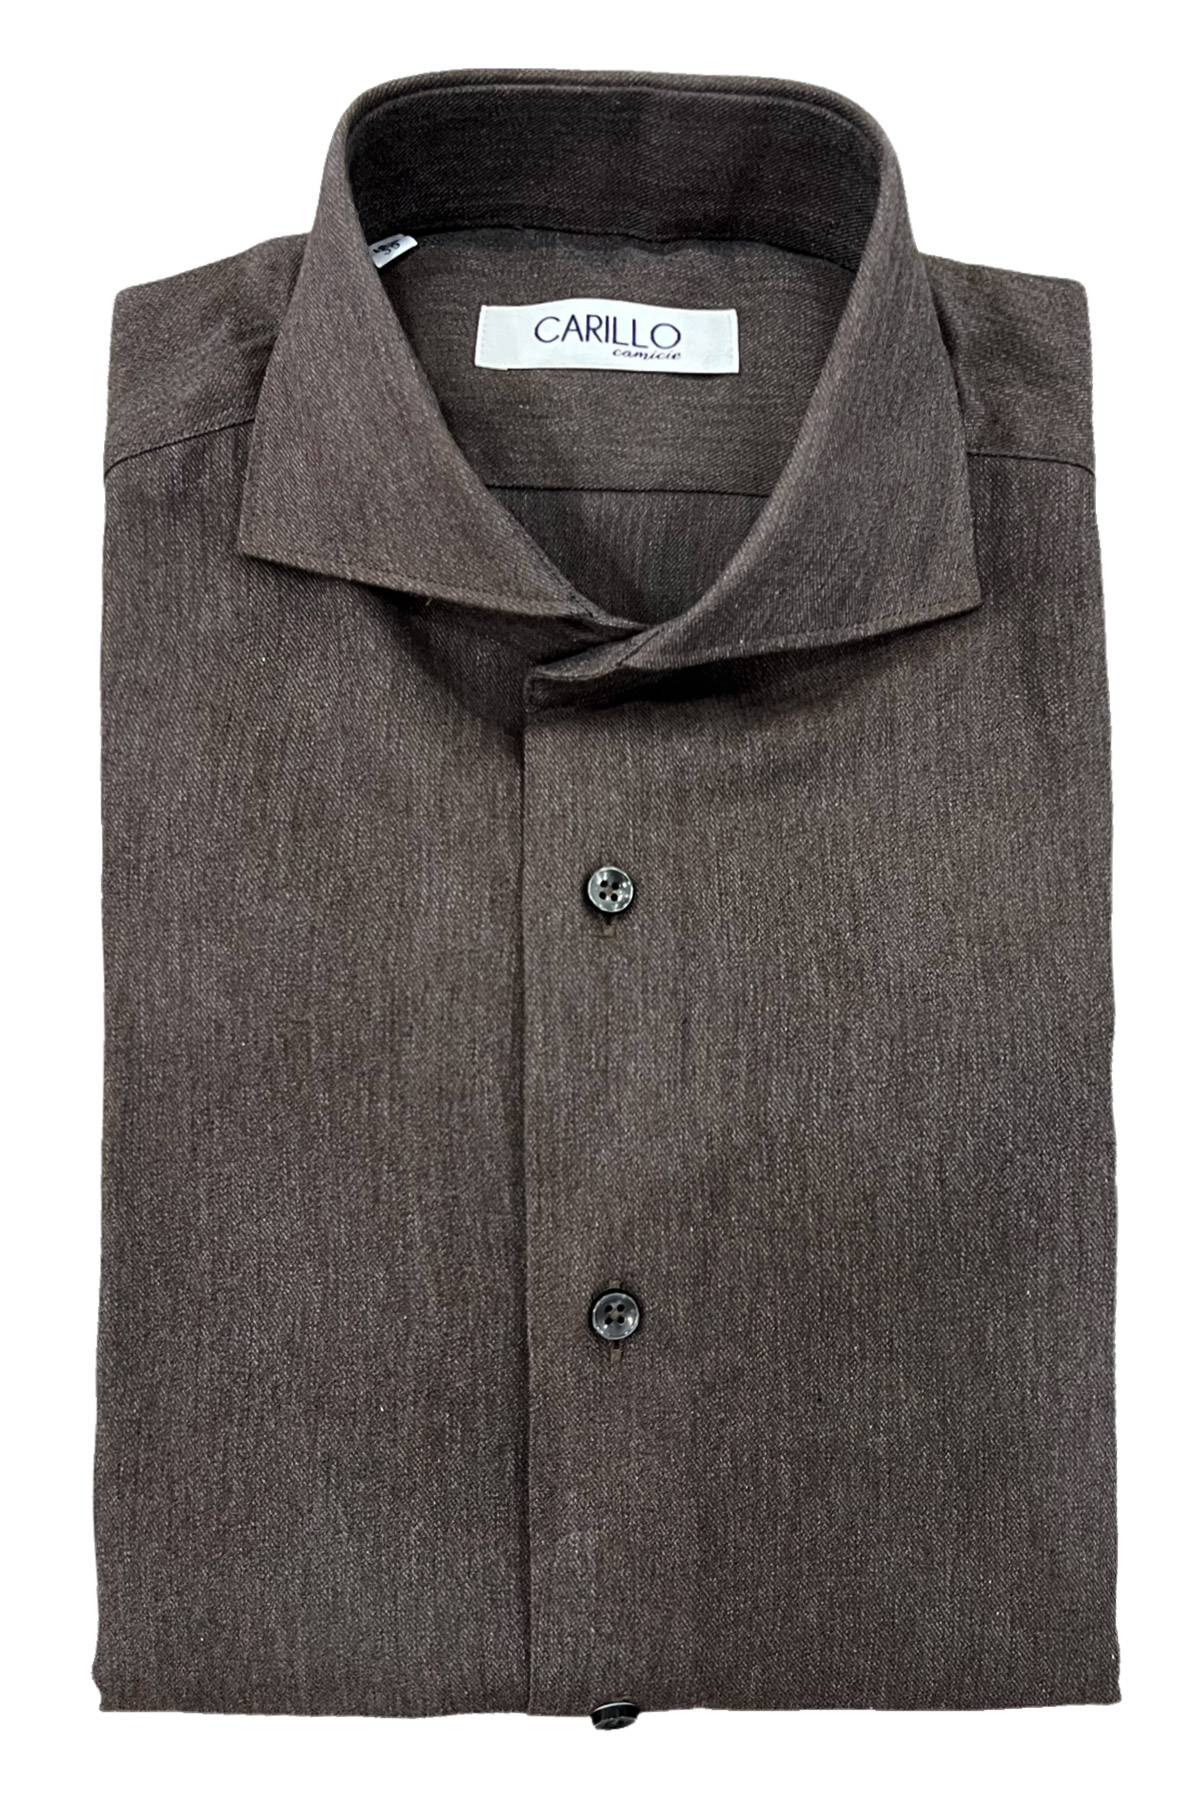 Camicia uomo slim marrone effetto lana bottone grigio